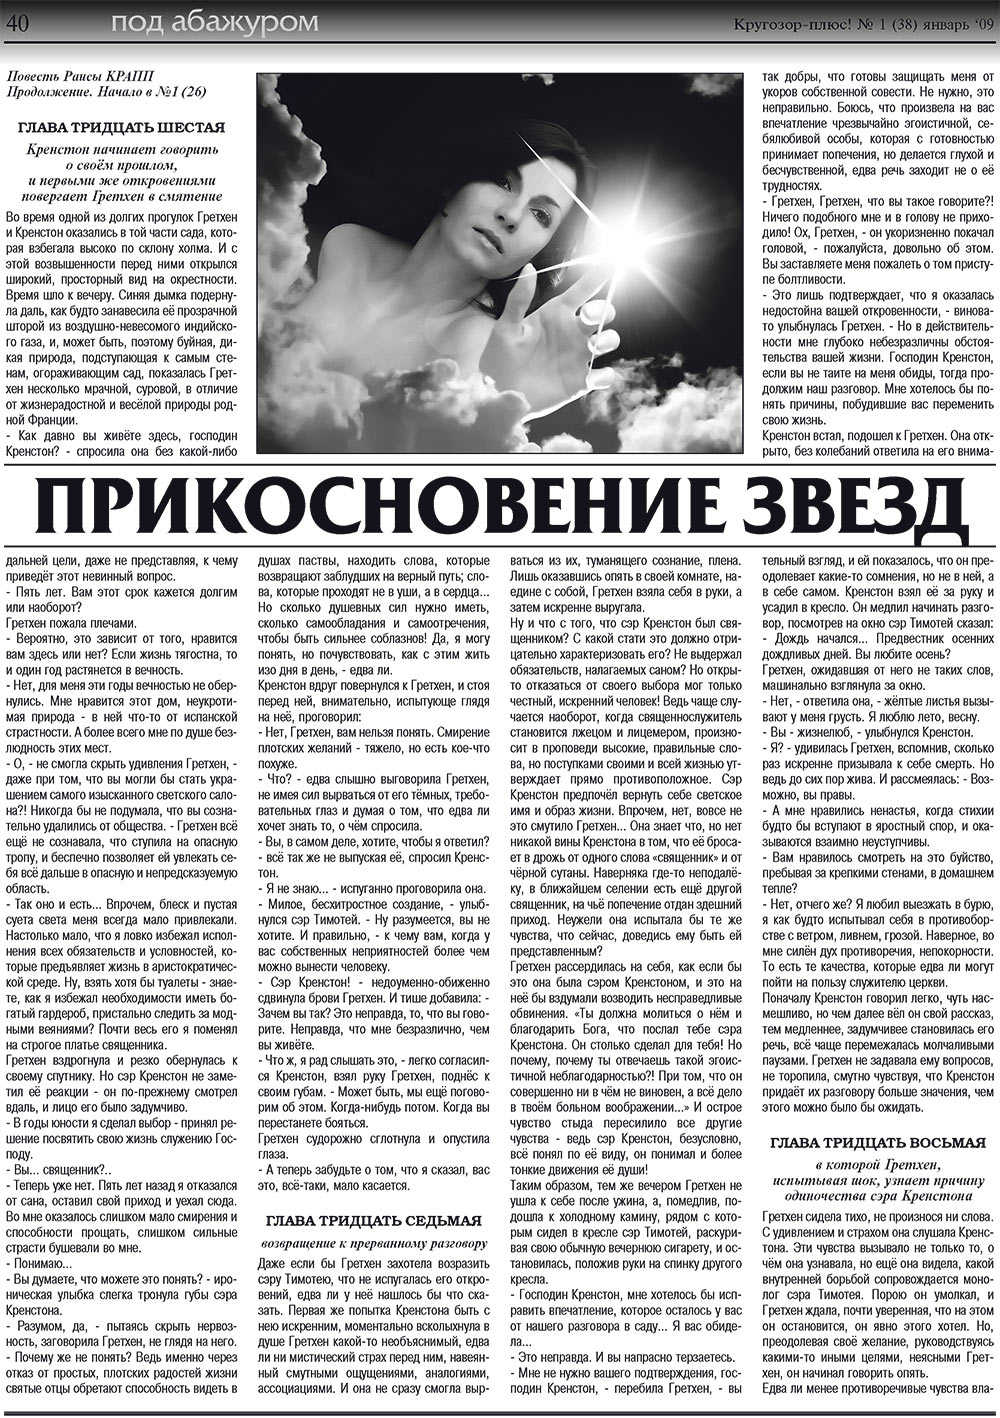 Кругозор плюс!, газета. 2009 №1 стр.40